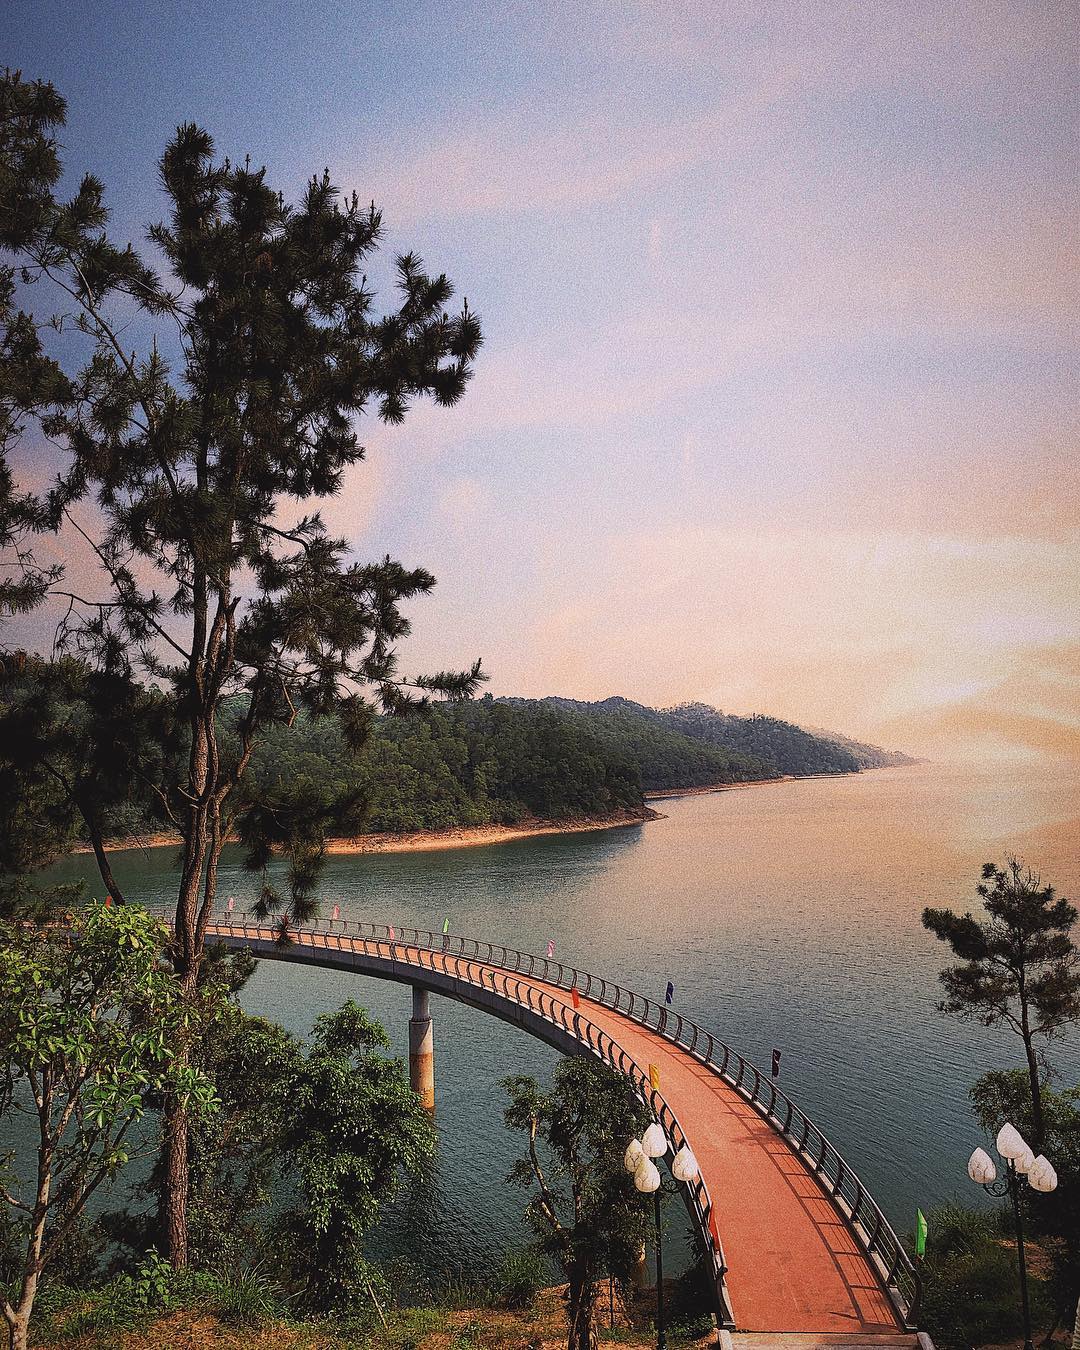 Khám phá Hồ Kẻ Gỗ – Ốc đảo xanh cách biệt với Thành phố Hà Tĩnh